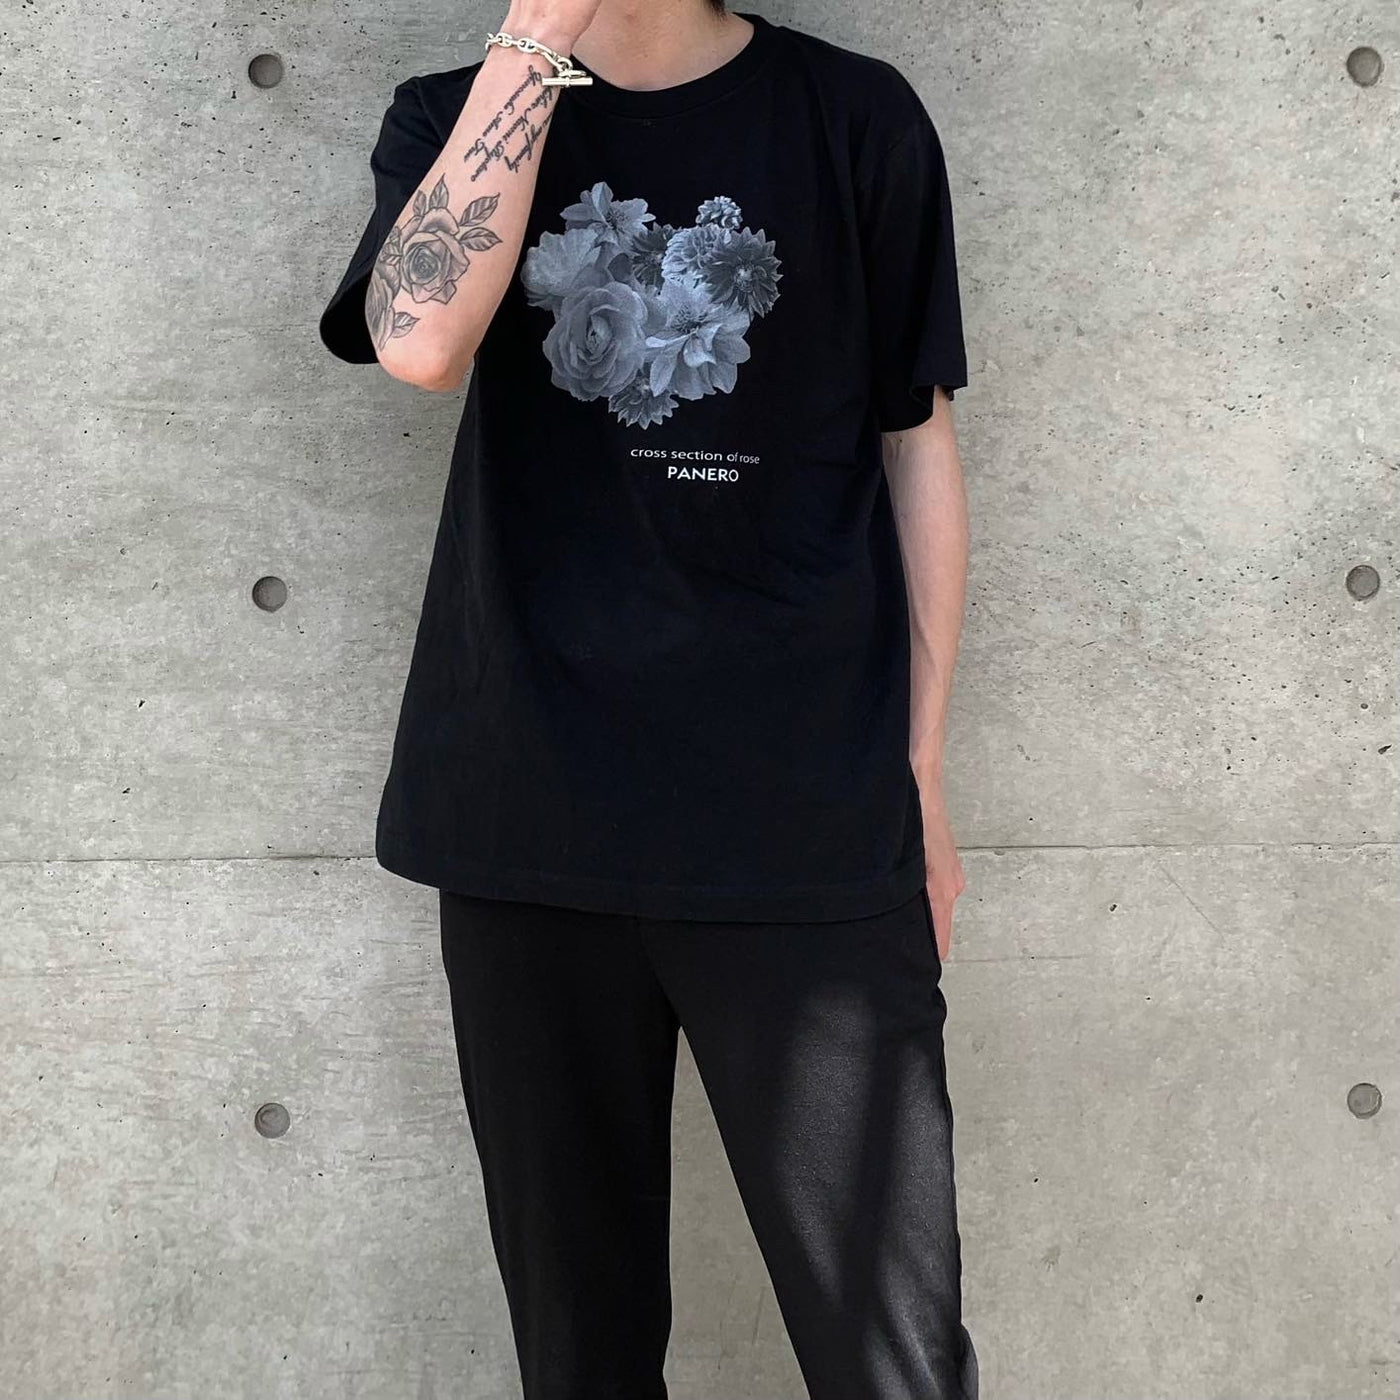 【即納】"Fullbloom" Flower T-Shirt (ブラック)